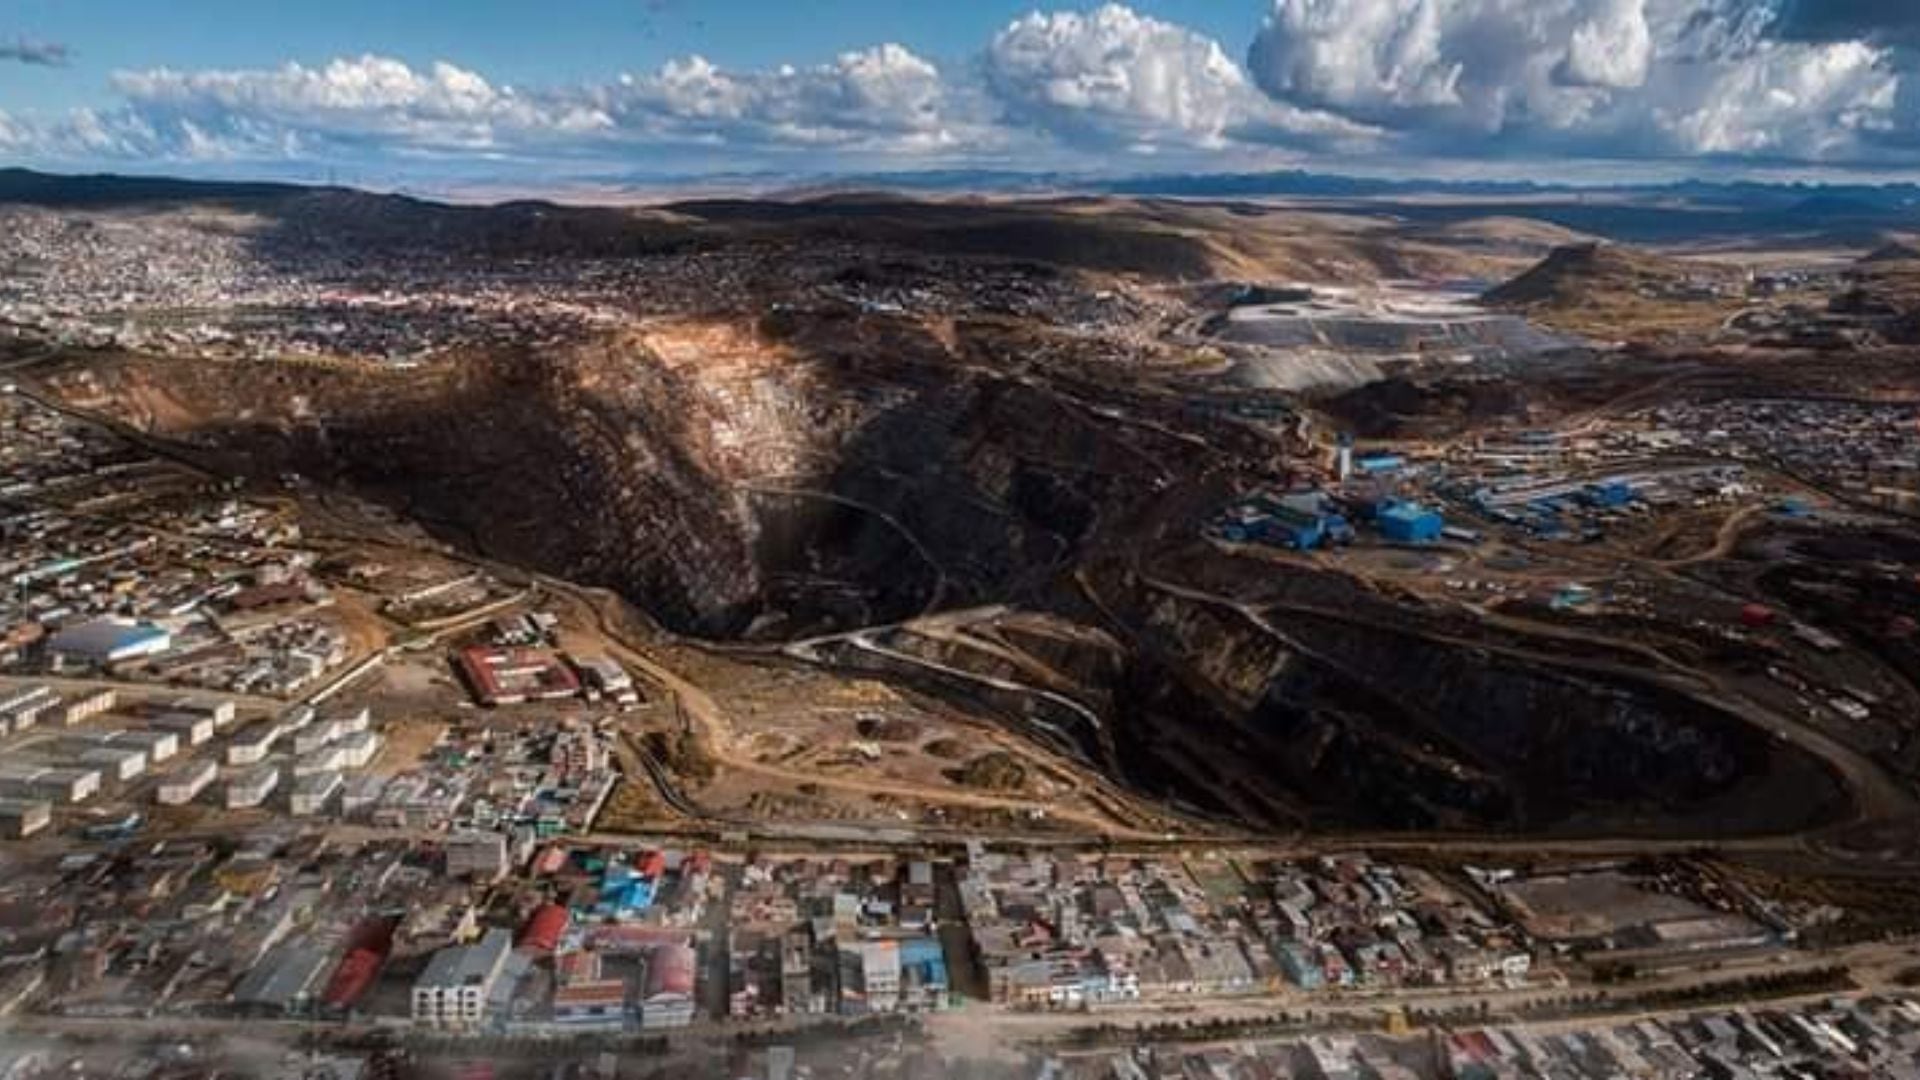 La expansión minera y la falta de recursos básicos devastan a esta ciudad peruana. Testimonios y estudios revelan una crisis de salud pública con 8 de cada 10 habitantes contaminados por plomo.
Foto: Gian Yurivilca